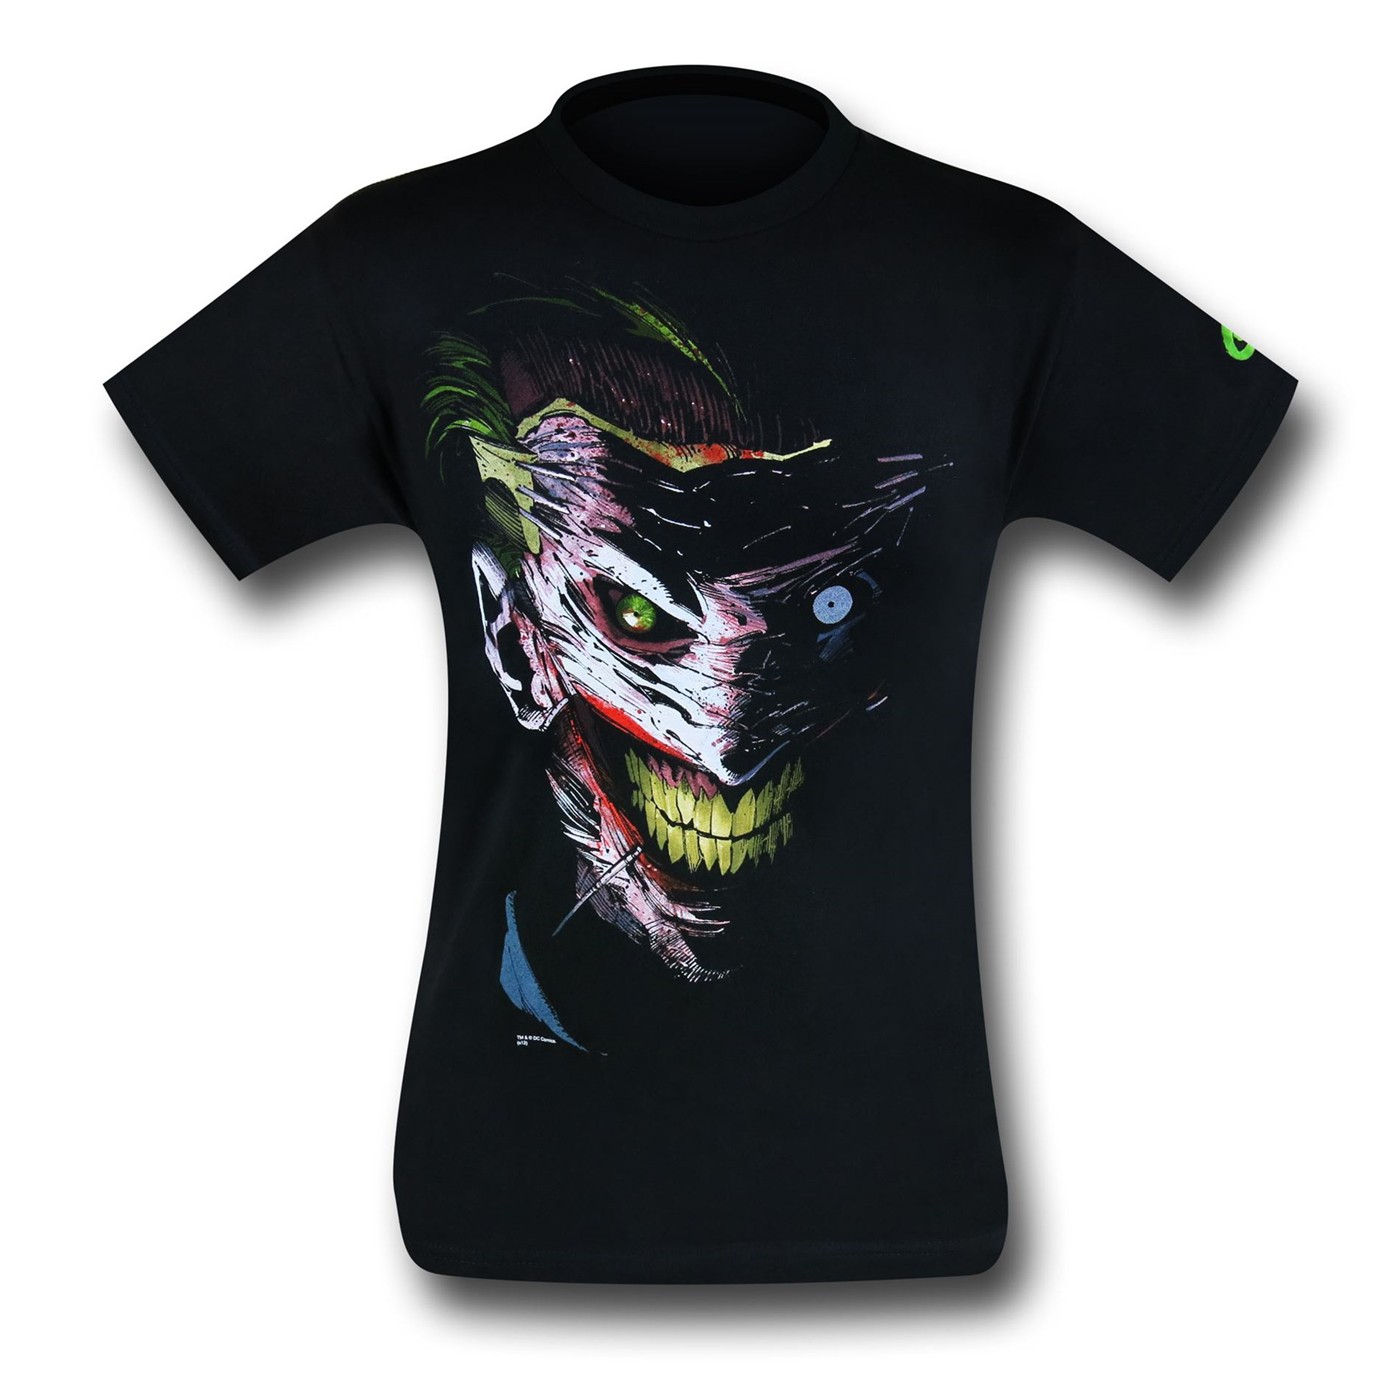 Joker Face Mask By Greg Capullo T-Shirt